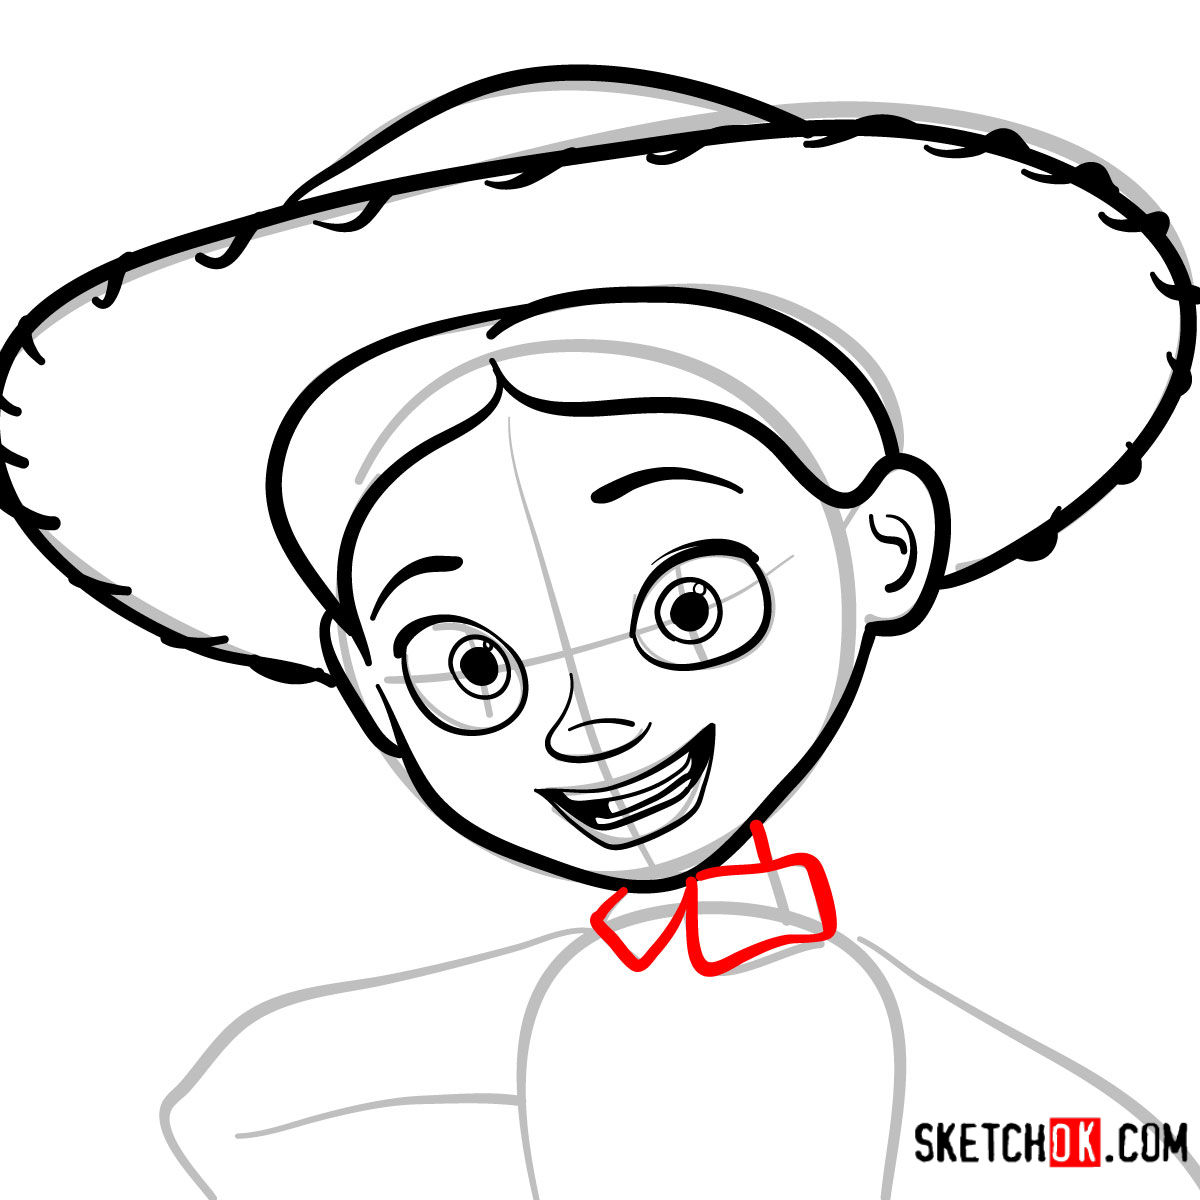 How to draw a portrait of Jessie | Toy Story - step 06